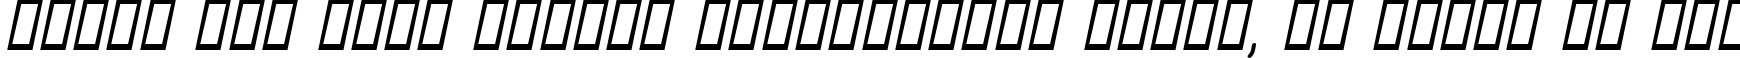 Пример написания шрифтом Aunchanted Bold Oblique текста на русском